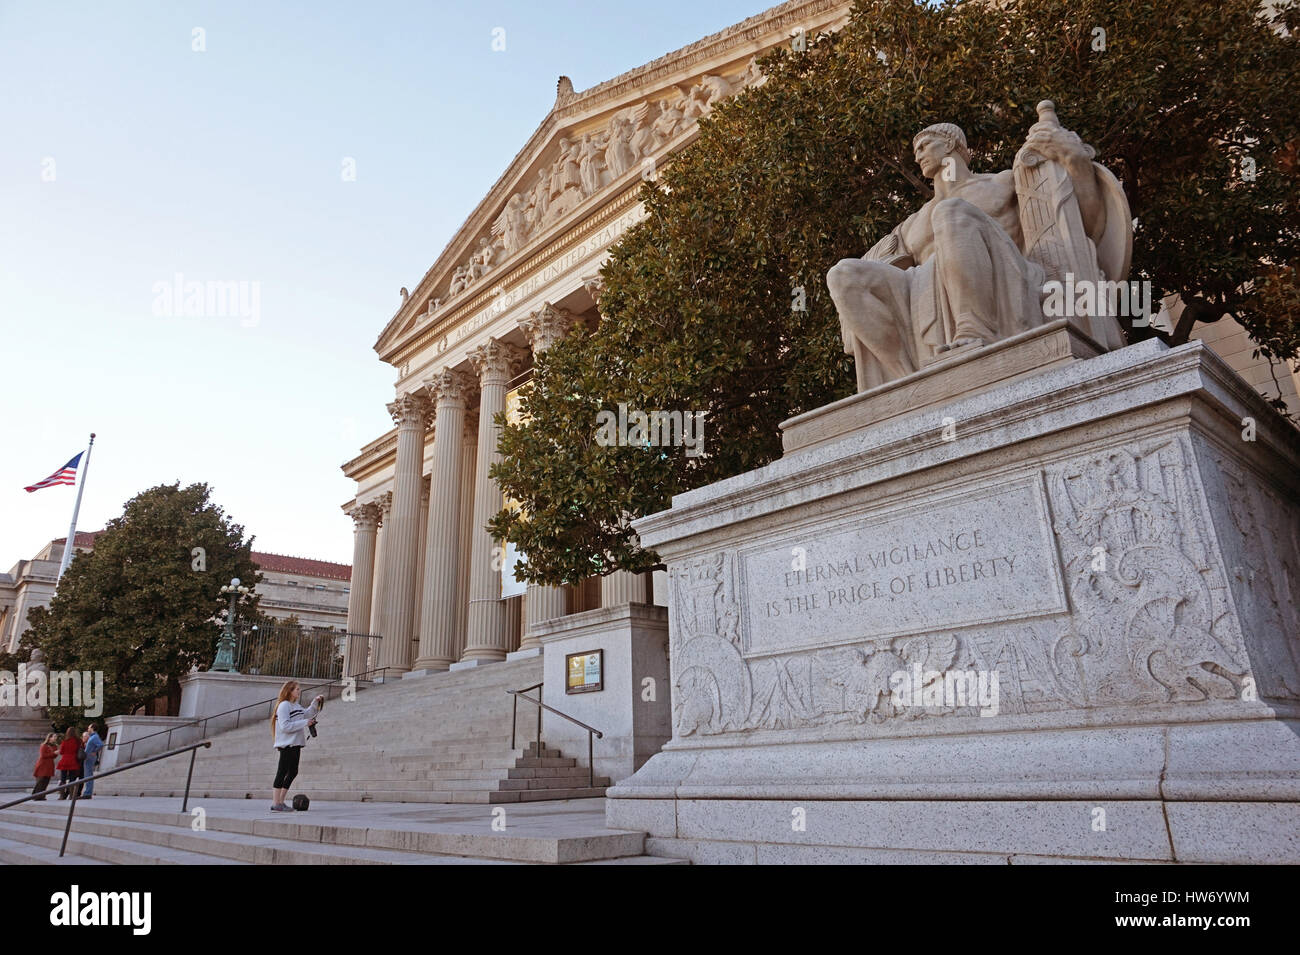 L'eterna vigilanza è il prezzo della libertà - iscrizione al di sotto di una statua al di fuori degli archivi nazionali, Washington DC, Stati Uniti d'America Foto Stock